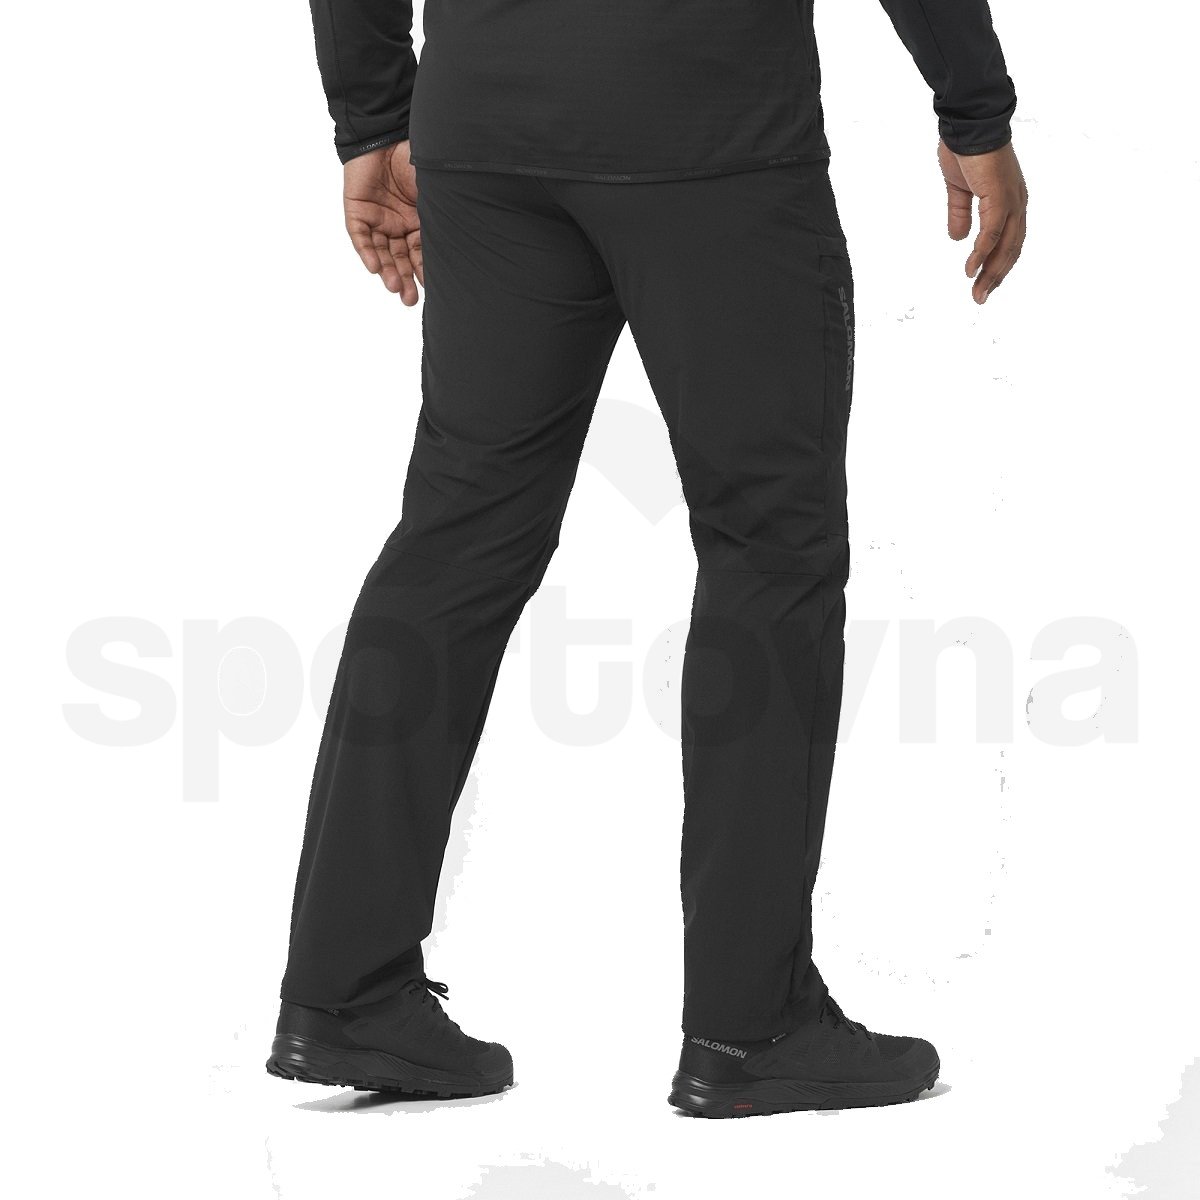 Kalhoty Salomon Wayfarer Pants M - černá (zkrácená délka)